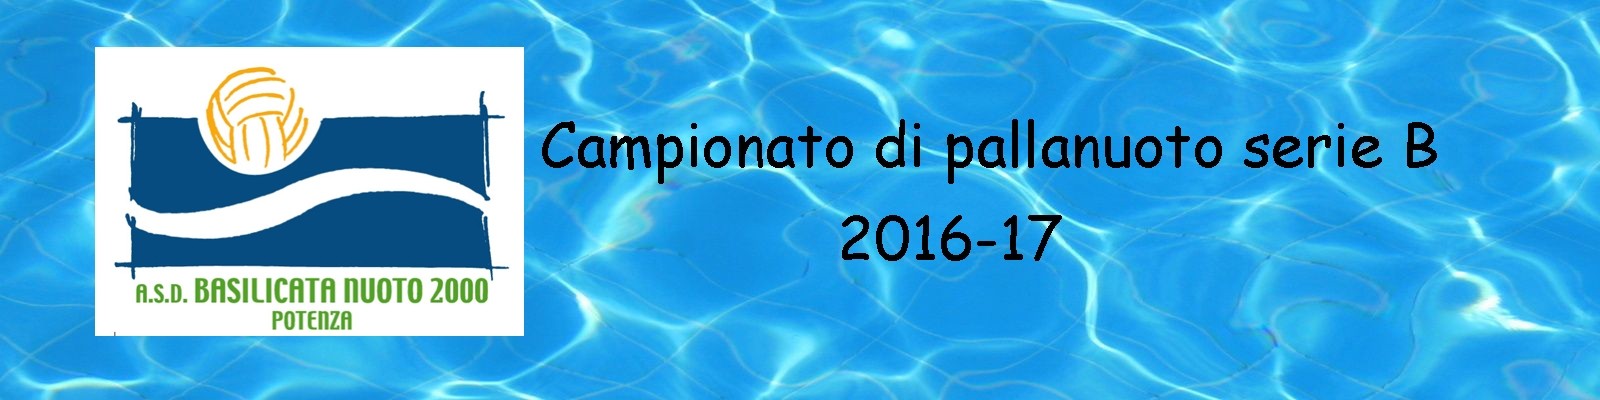 Basilicata Nuoto 2000 anno 2017